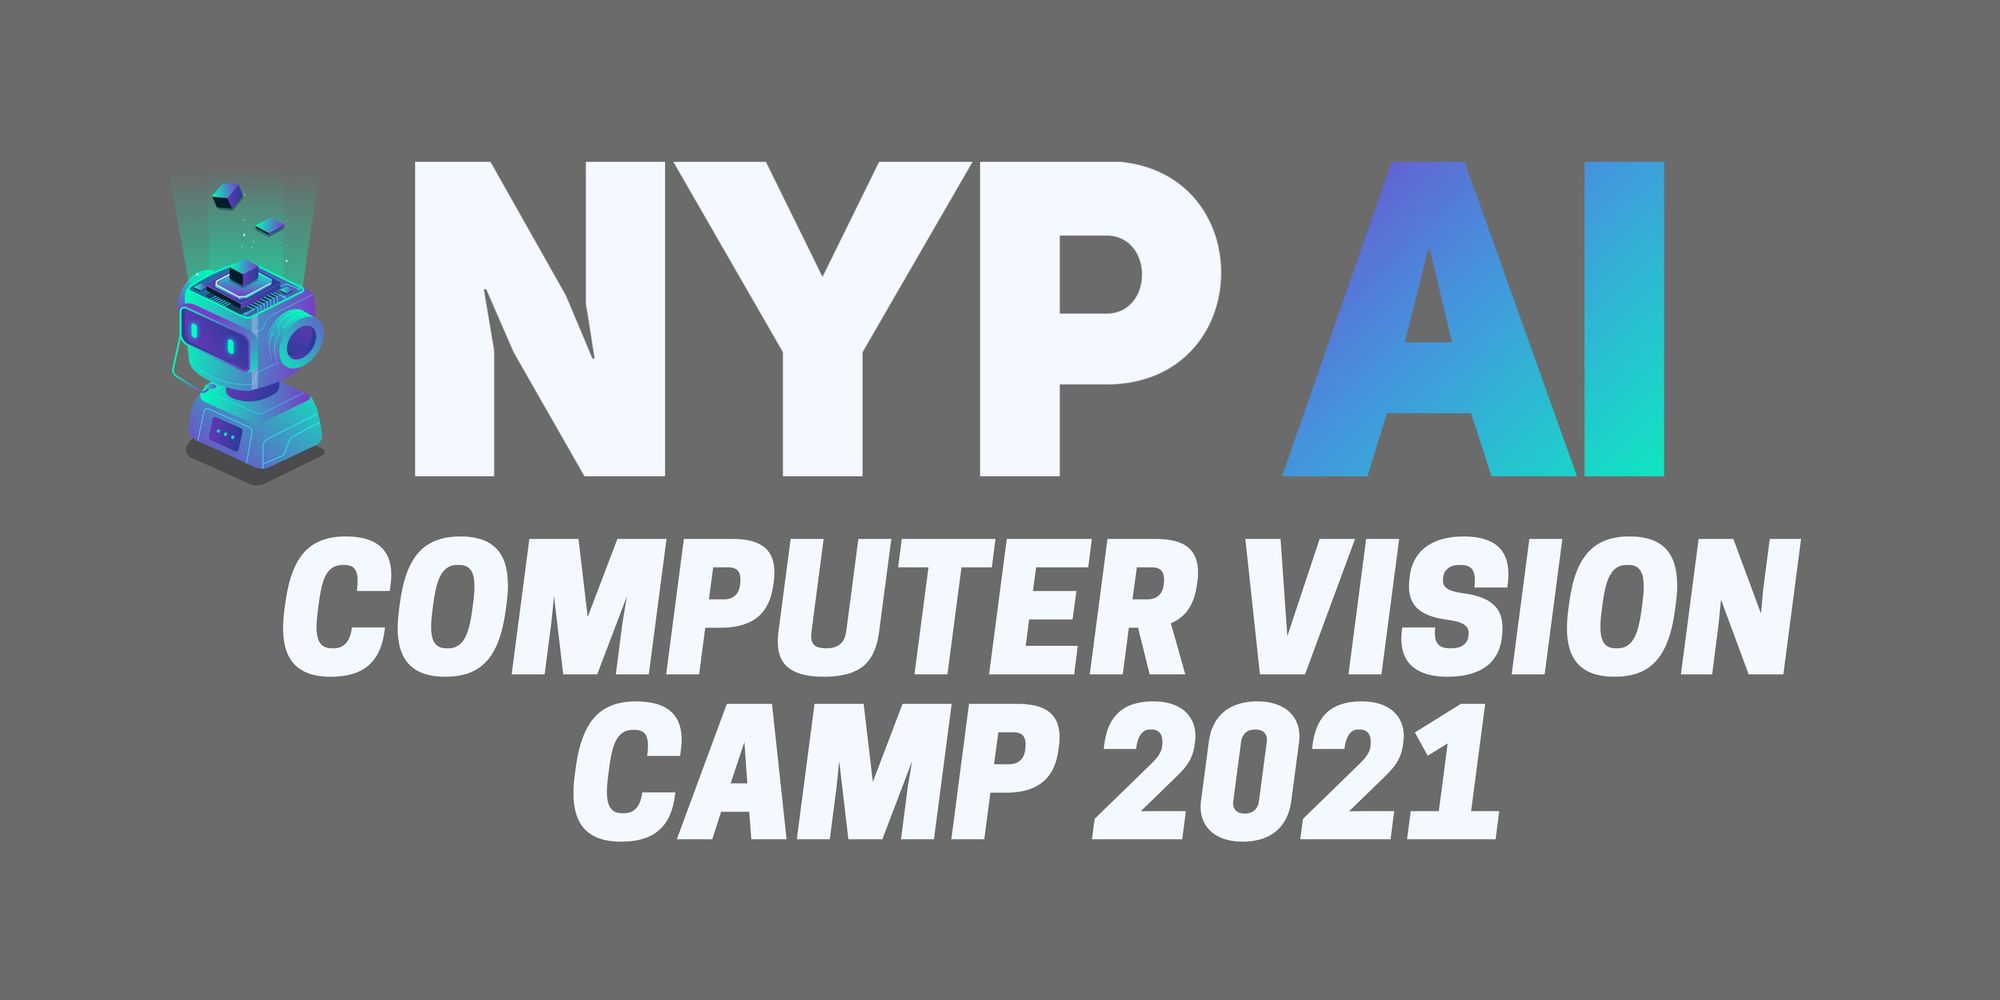 NYP AI Computer Vision Camp 2021